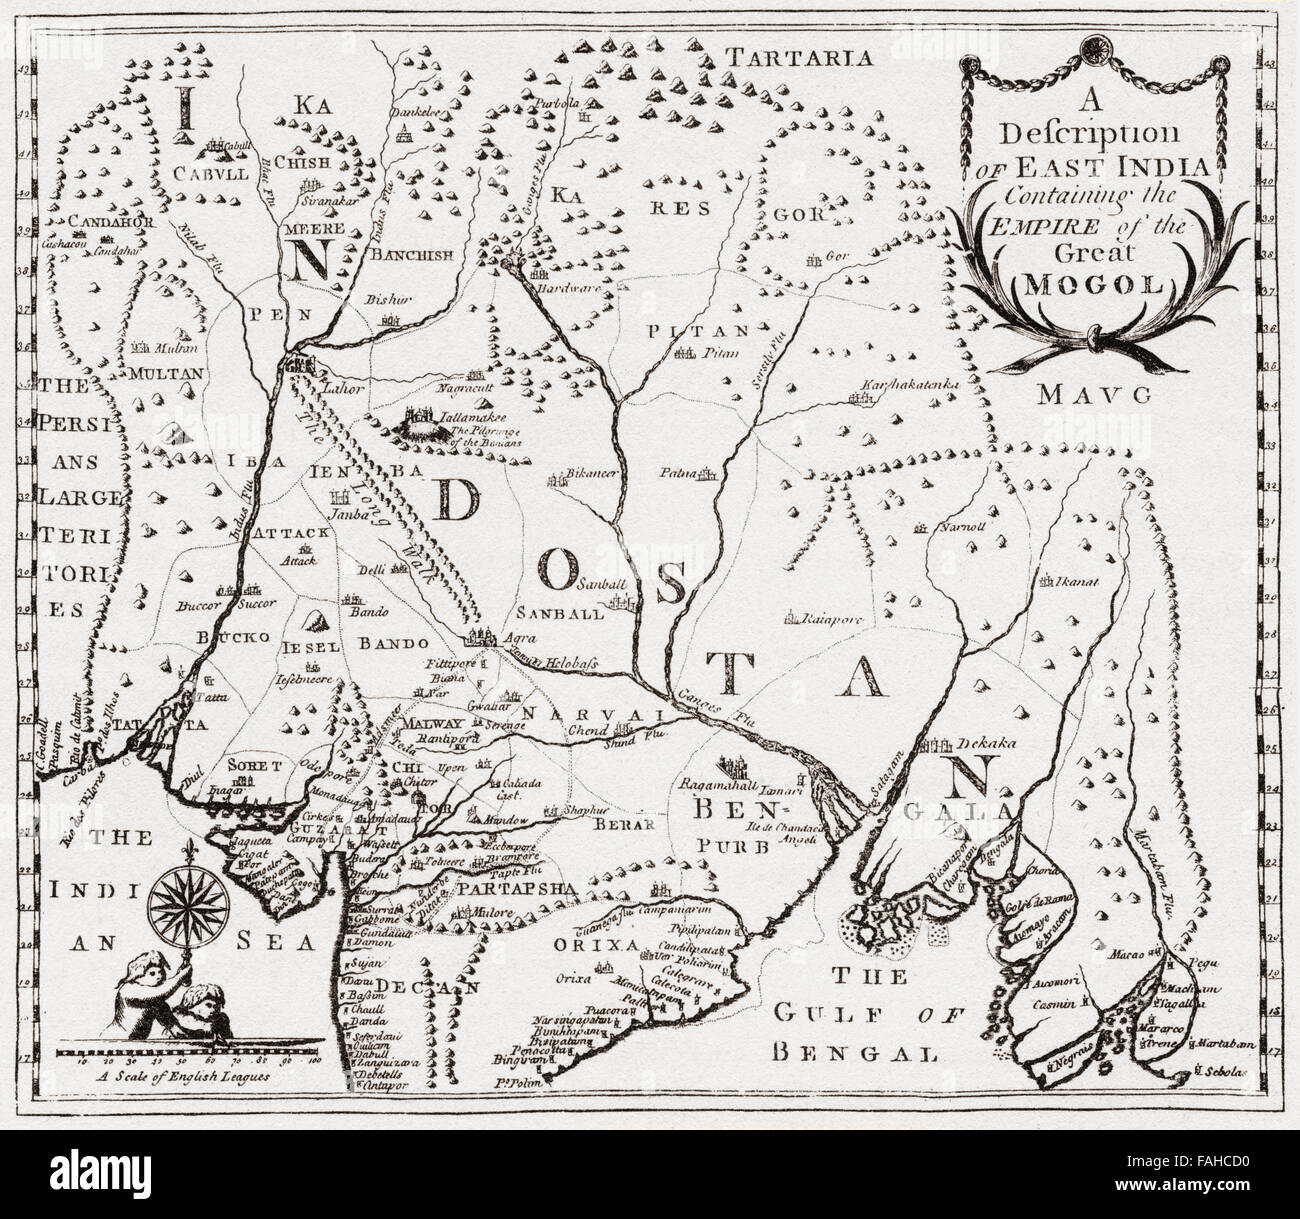 Mapa que muestra los territorios en la India oriental de Nur-ud-din Mohammad Salim, conocido por su nombre imperial Jahangir, 1569 -1627. Cuarto emperador Mughal. Después del grabado de Edward Terry del viaje a la India oriental, 1655. Foto de stock